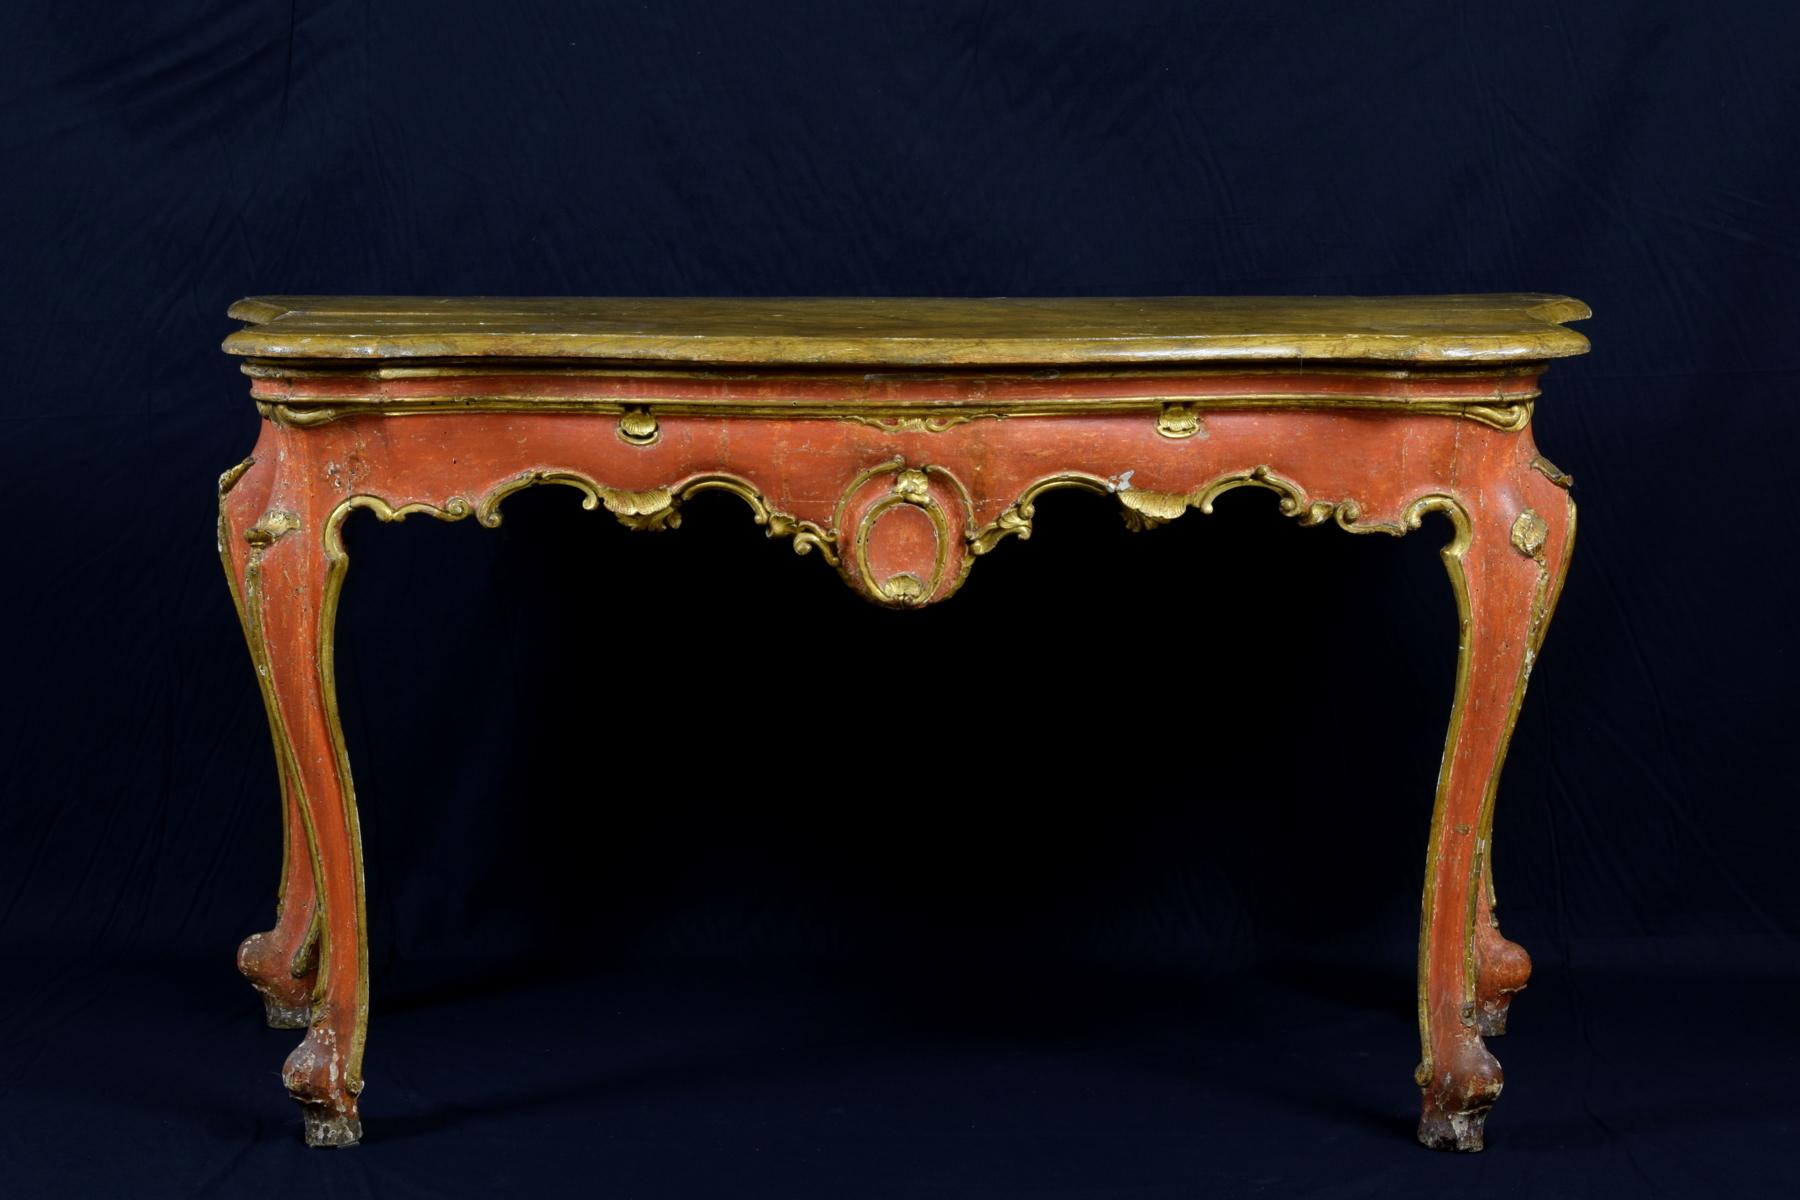 console en bois laqué de style baroque italien du XVIIIe siècle.

Cette table console en bois sculpté et laqué est un bel exemple du répertoire décoratif baroque vénitien. Les quatre pieds sont caractérisés par un mouvement arqué et le dessus est